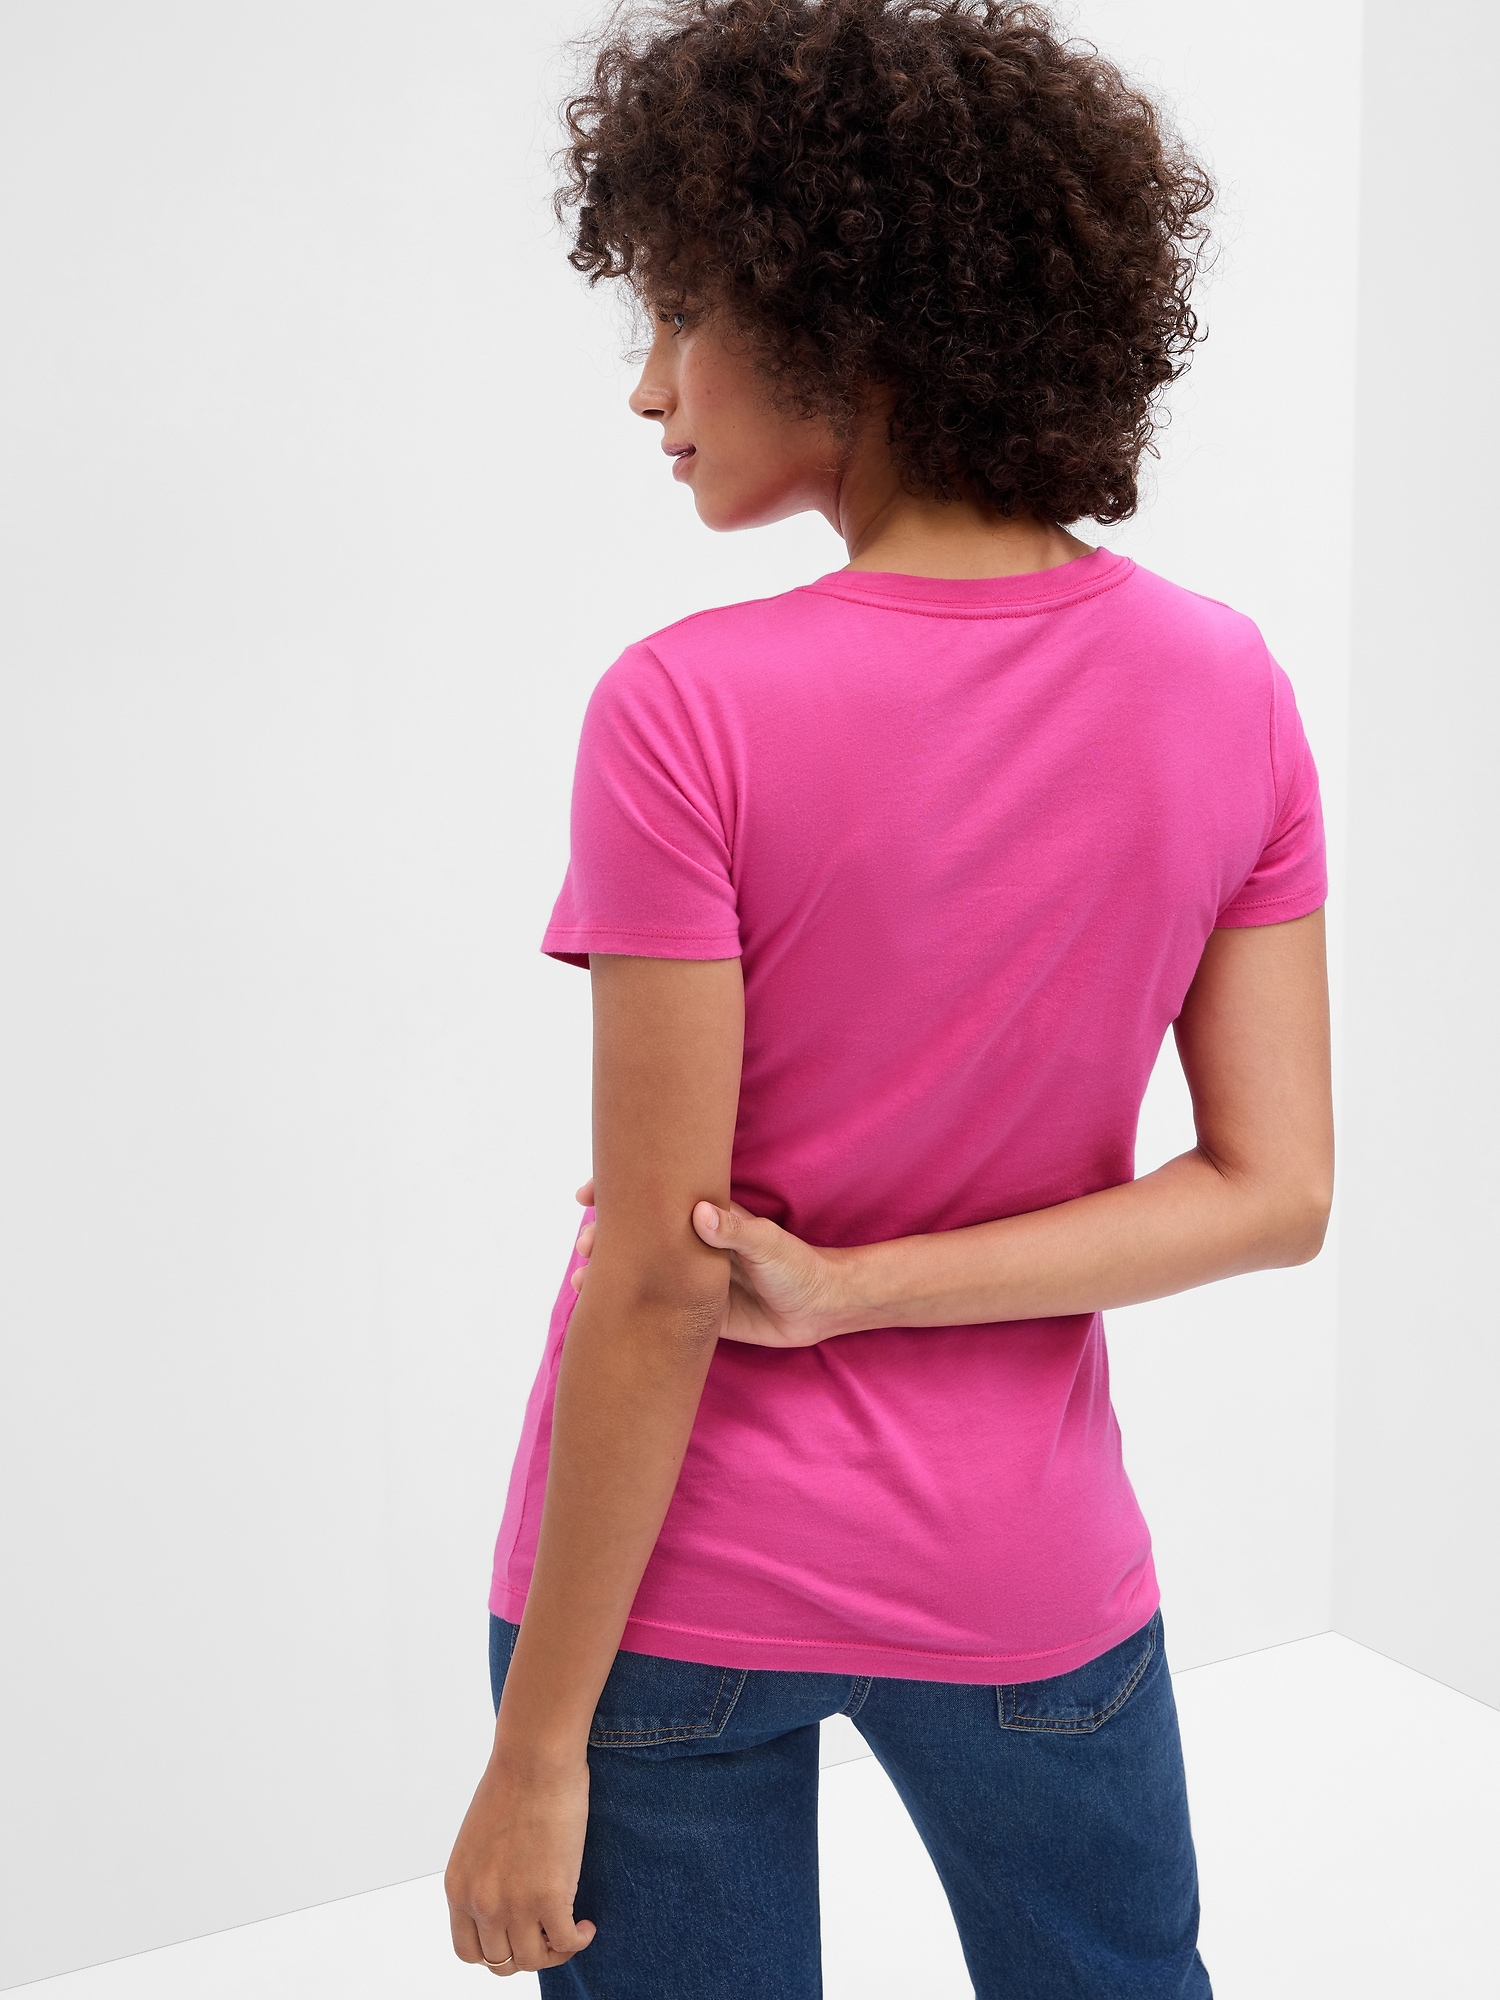 womens pink t shirt